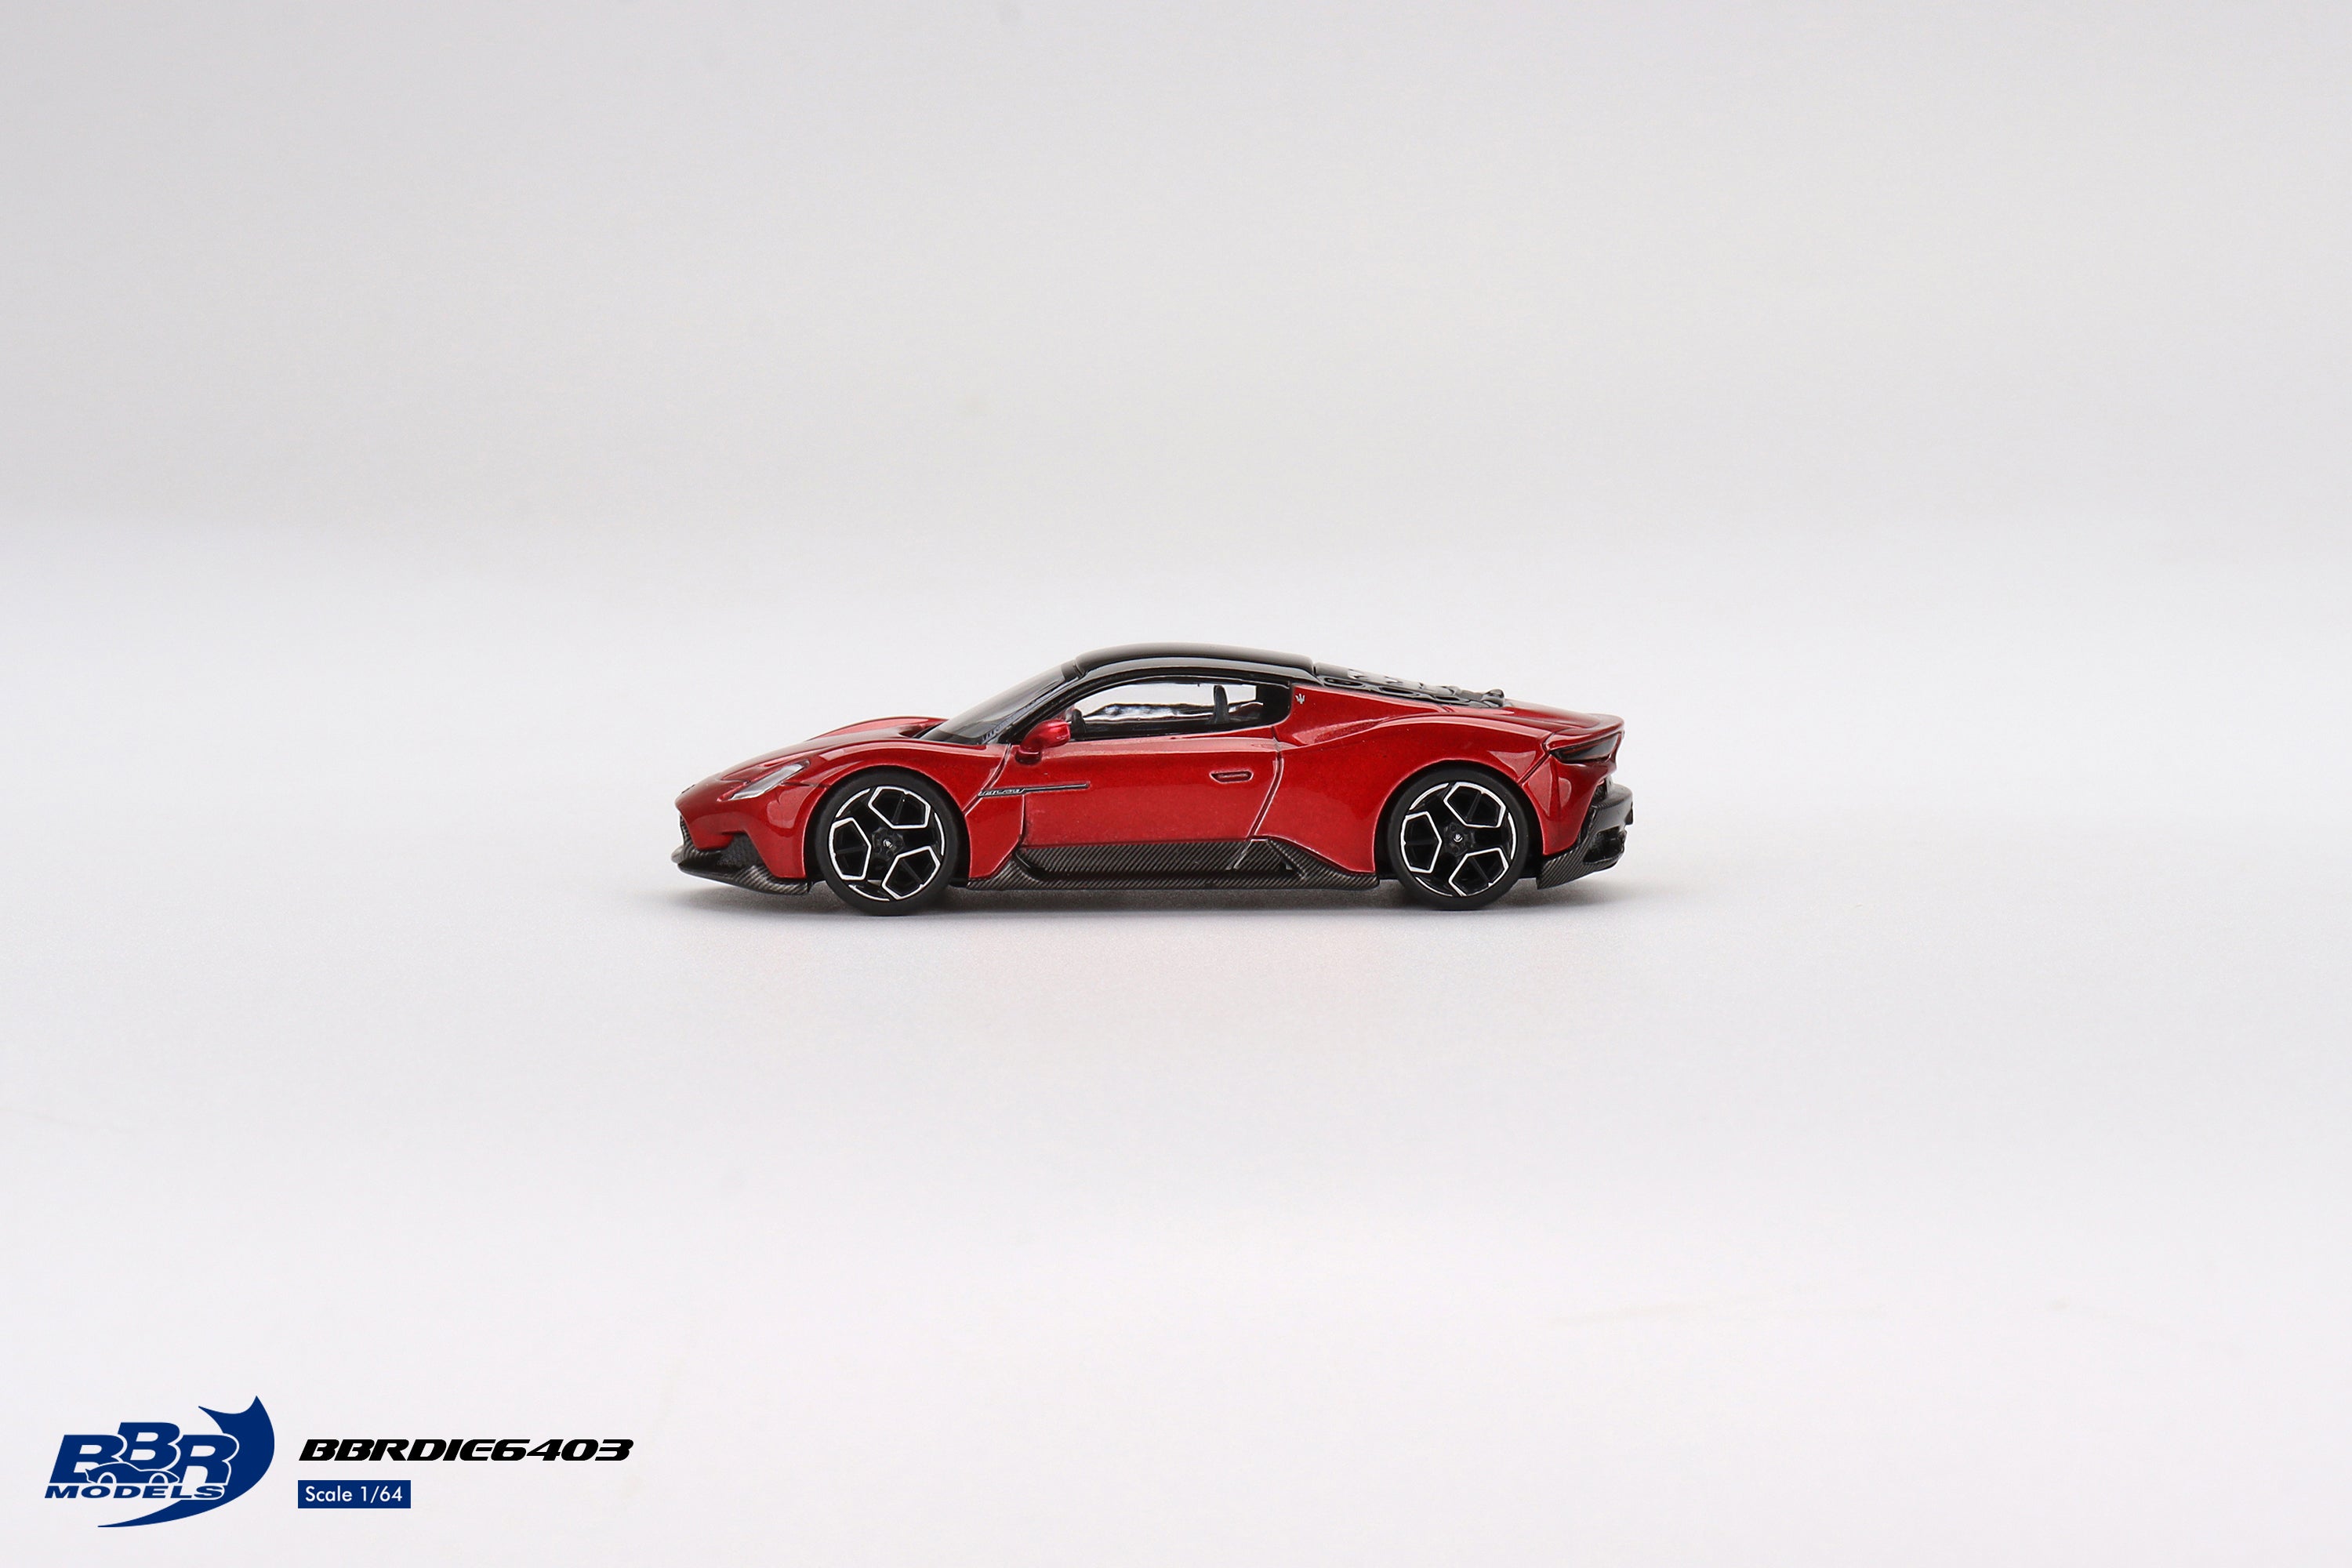 BBR Models 1/64 Maserati MC20 Rosso Vincente